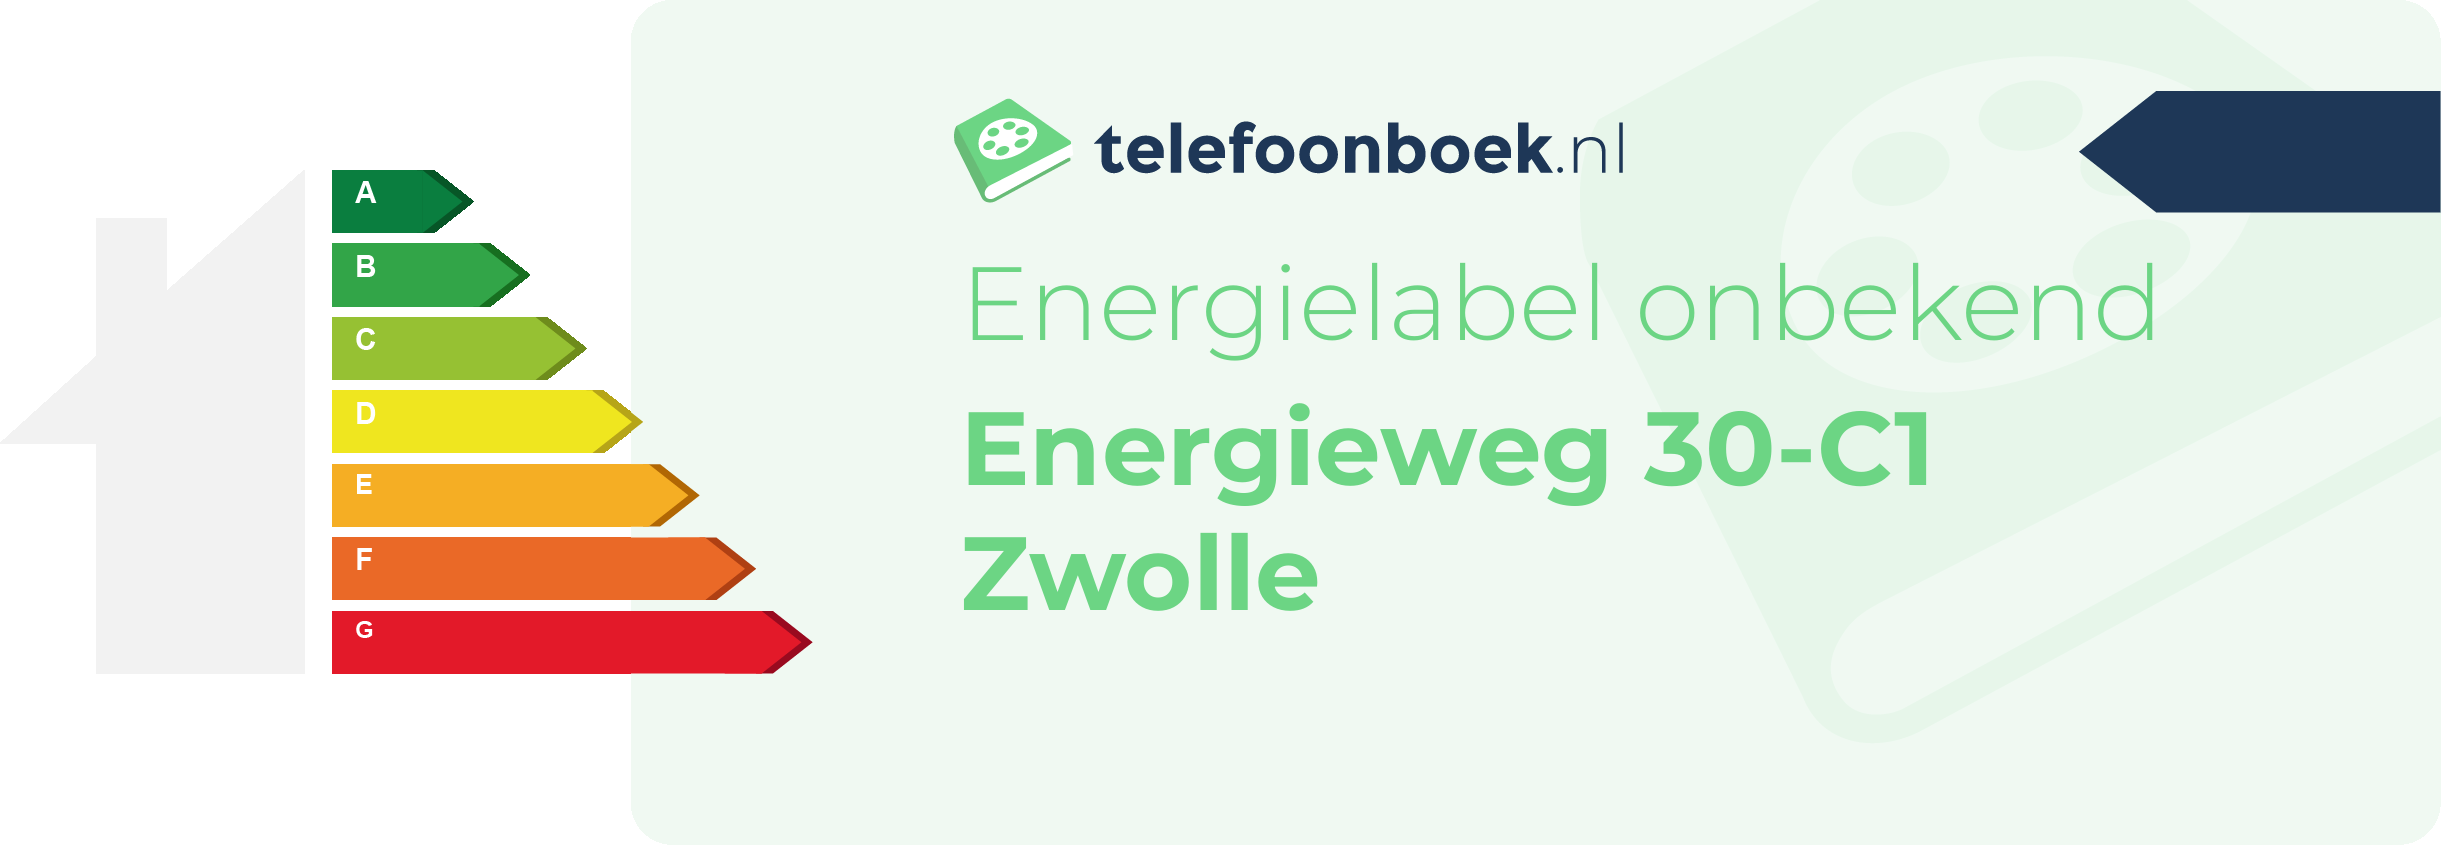 Energielabel Energieweg 30-C1 Zwolle